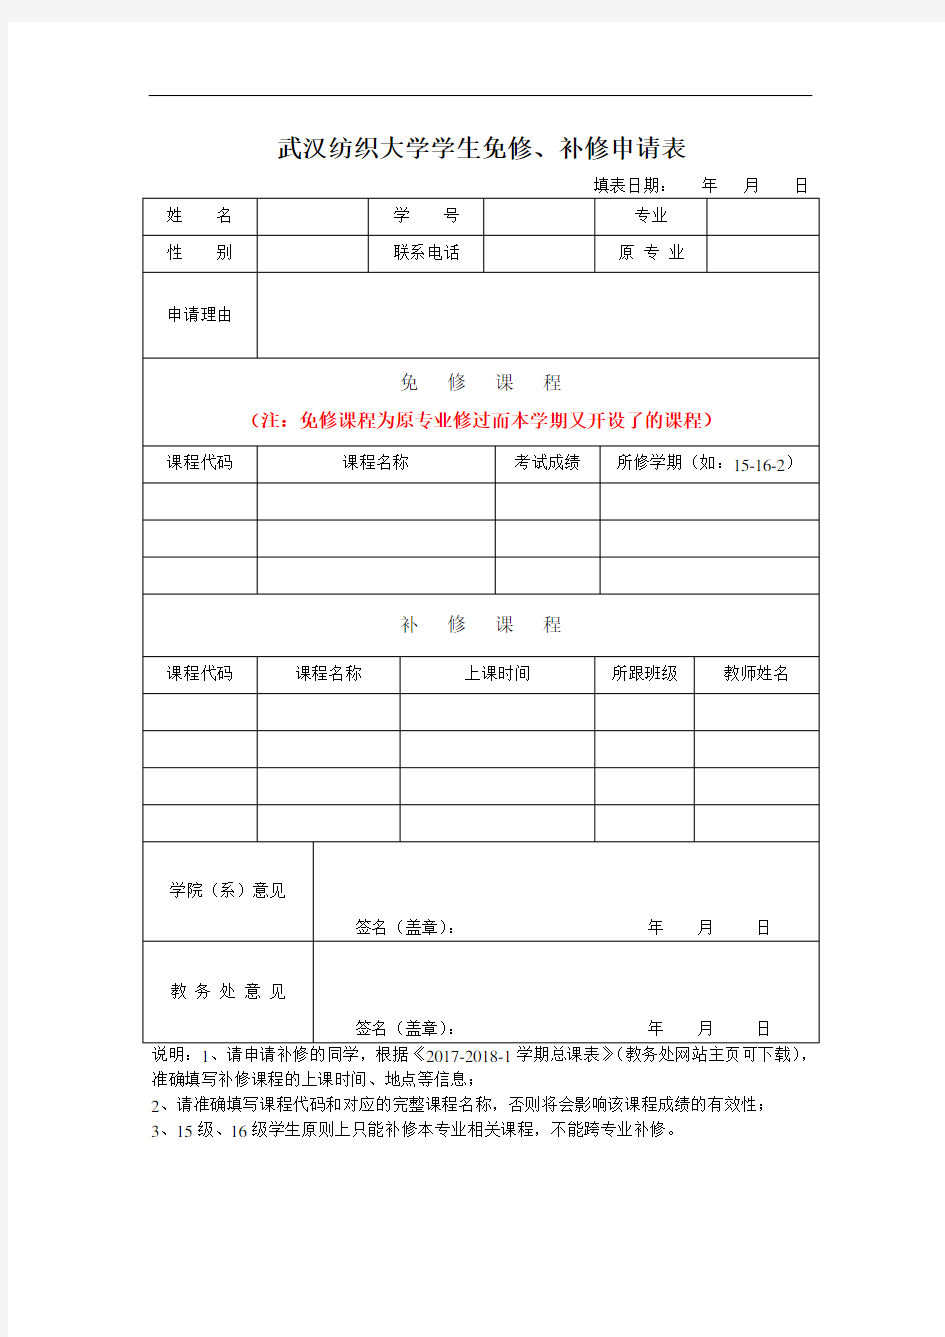 武汉纺织大学免修、补修申请表